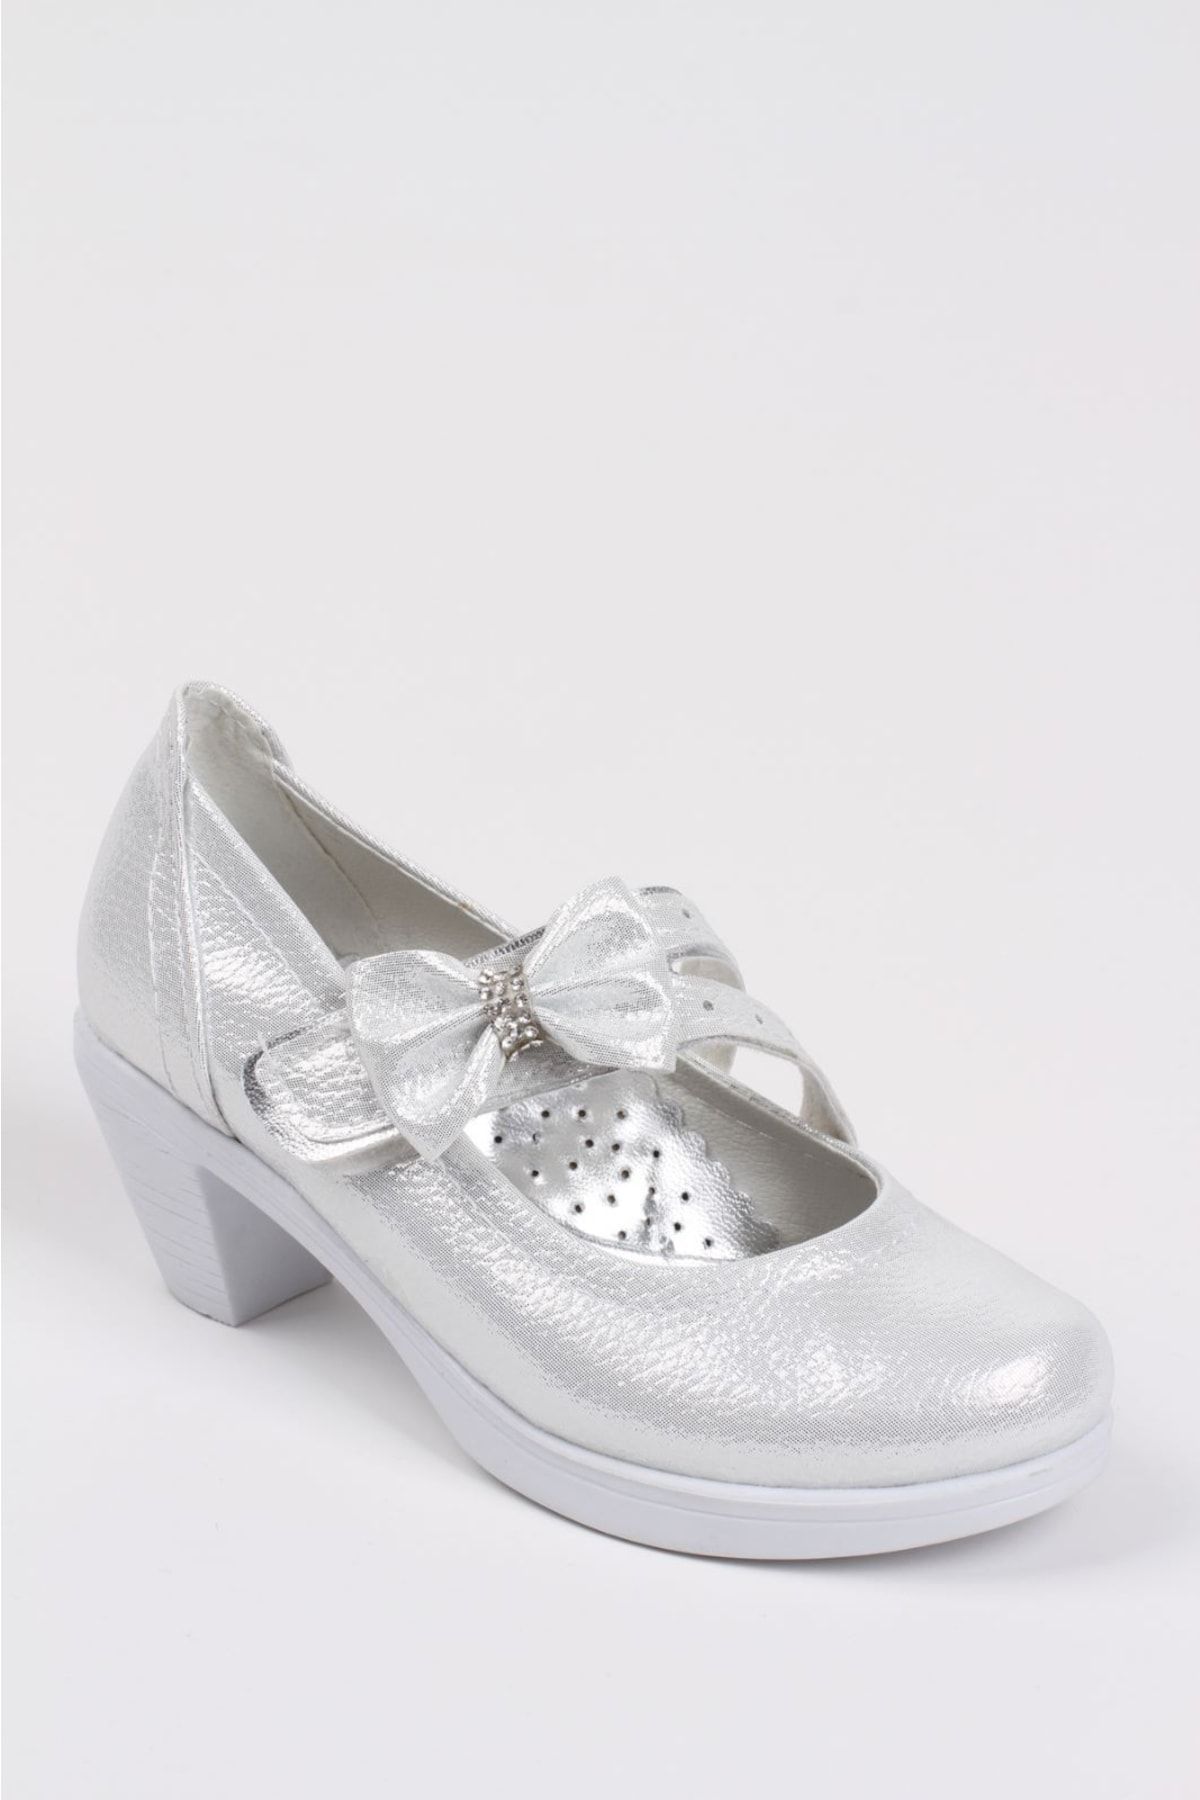 Sare Çocuk Giyim Beyaz Parlak Kız Çocuk Doğum Günü Ayakkabı